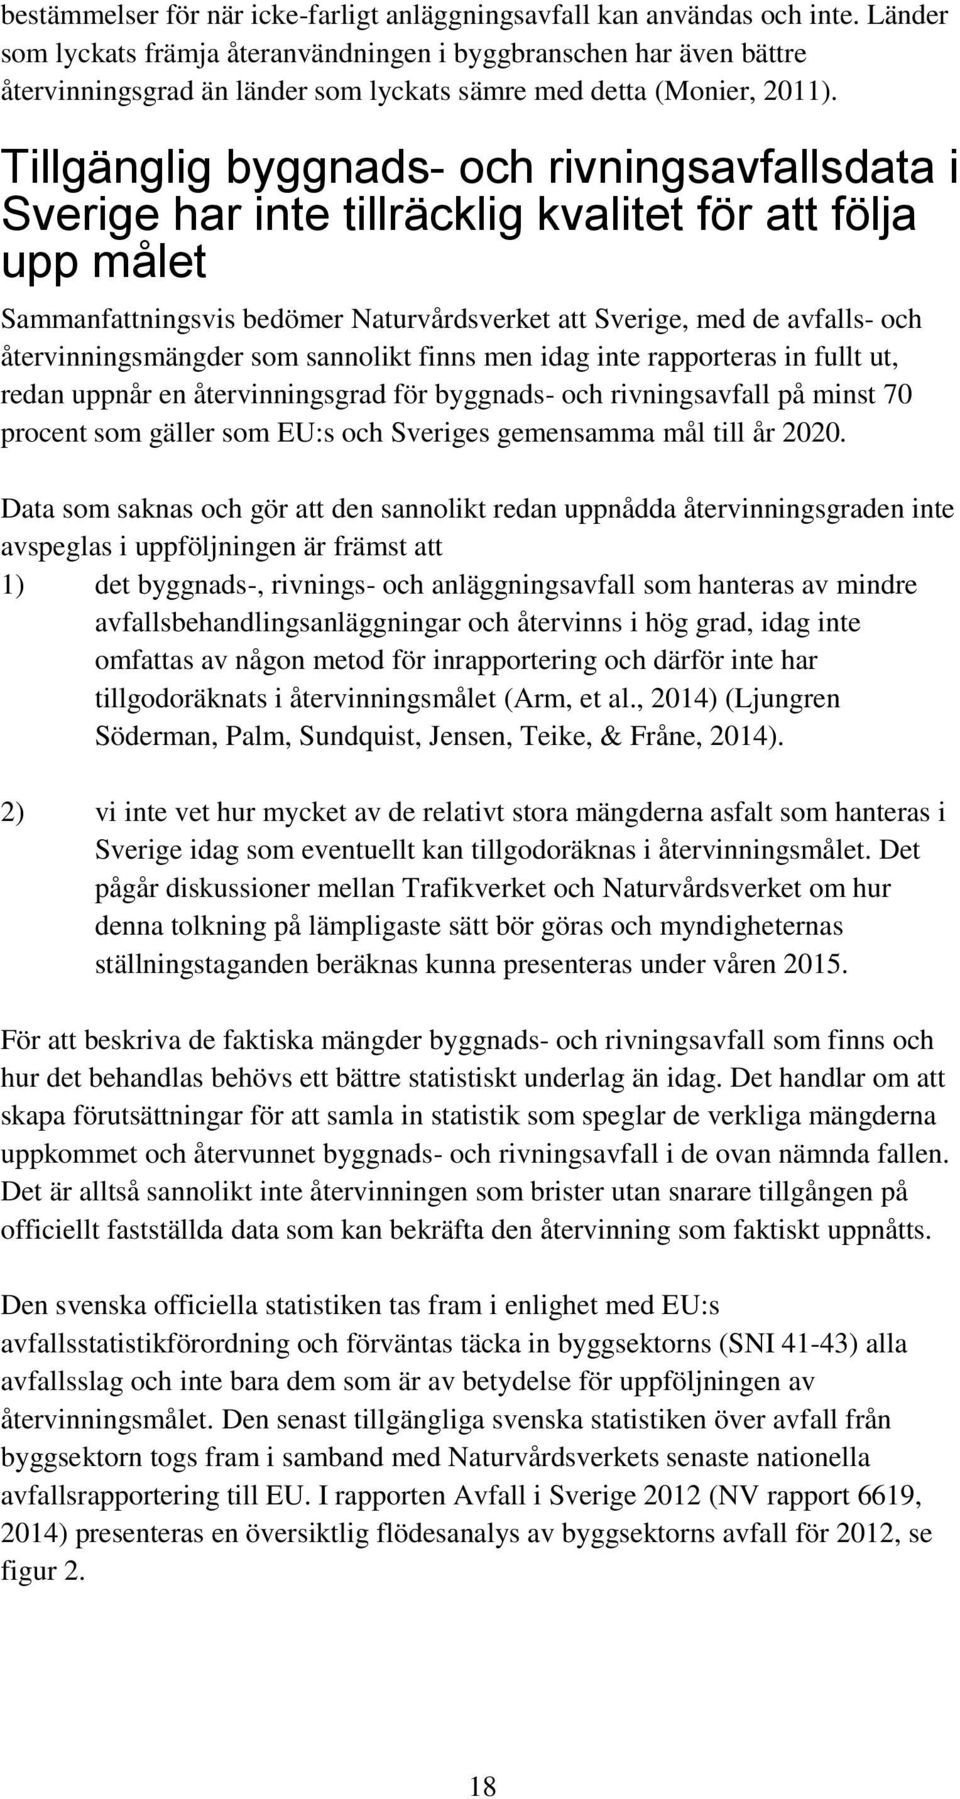 Tillgänglig byggnads- och rivningsavfallsdata i Sverige har inte tillräcklig kvalitet för att följa upp målet Sammanfattningsvis bedömer Naturvårdsverket att Sverige, med de avfalls- och